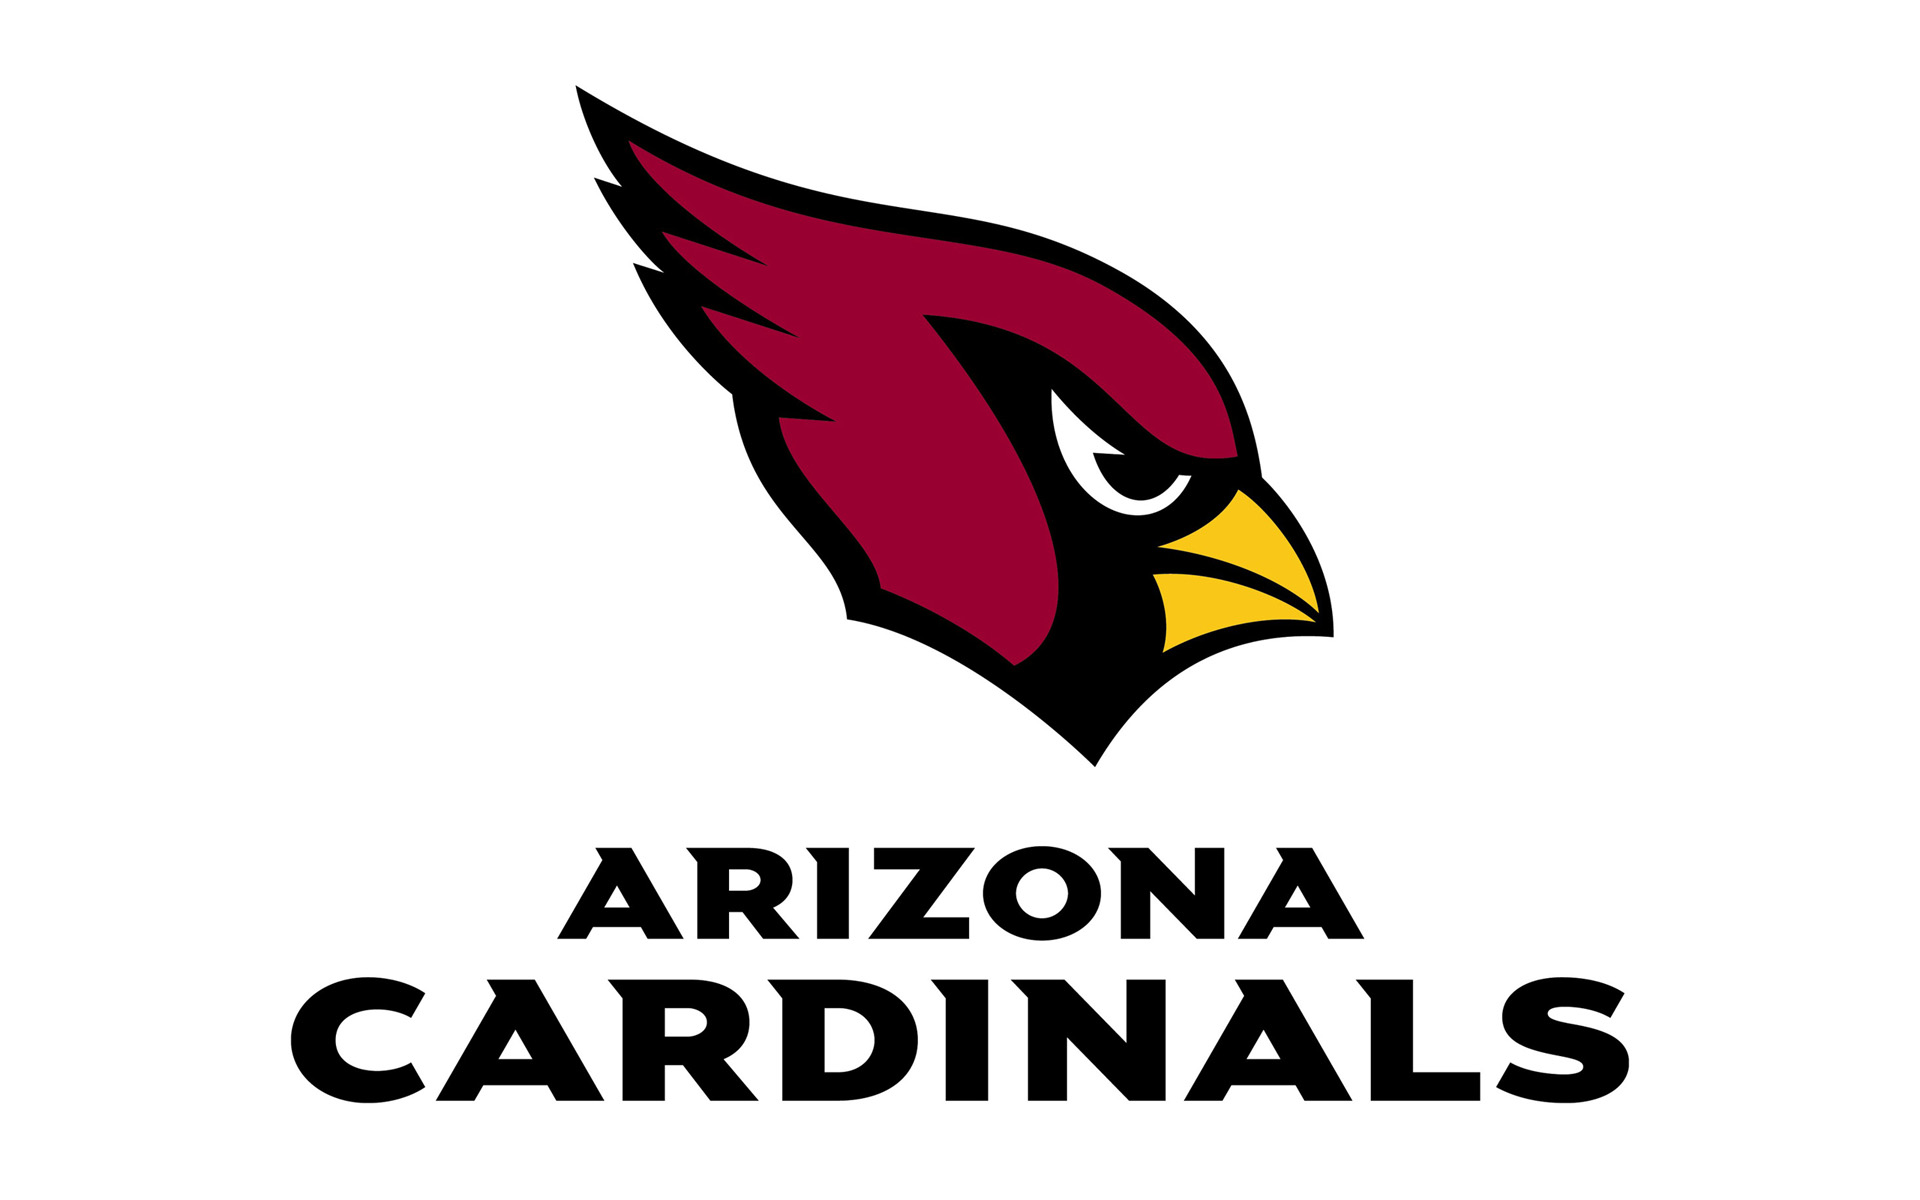 Nfl Arizona Cardinals Logo On White Background - Arizona Cardinals, Transparent background PNG HD thumbnail